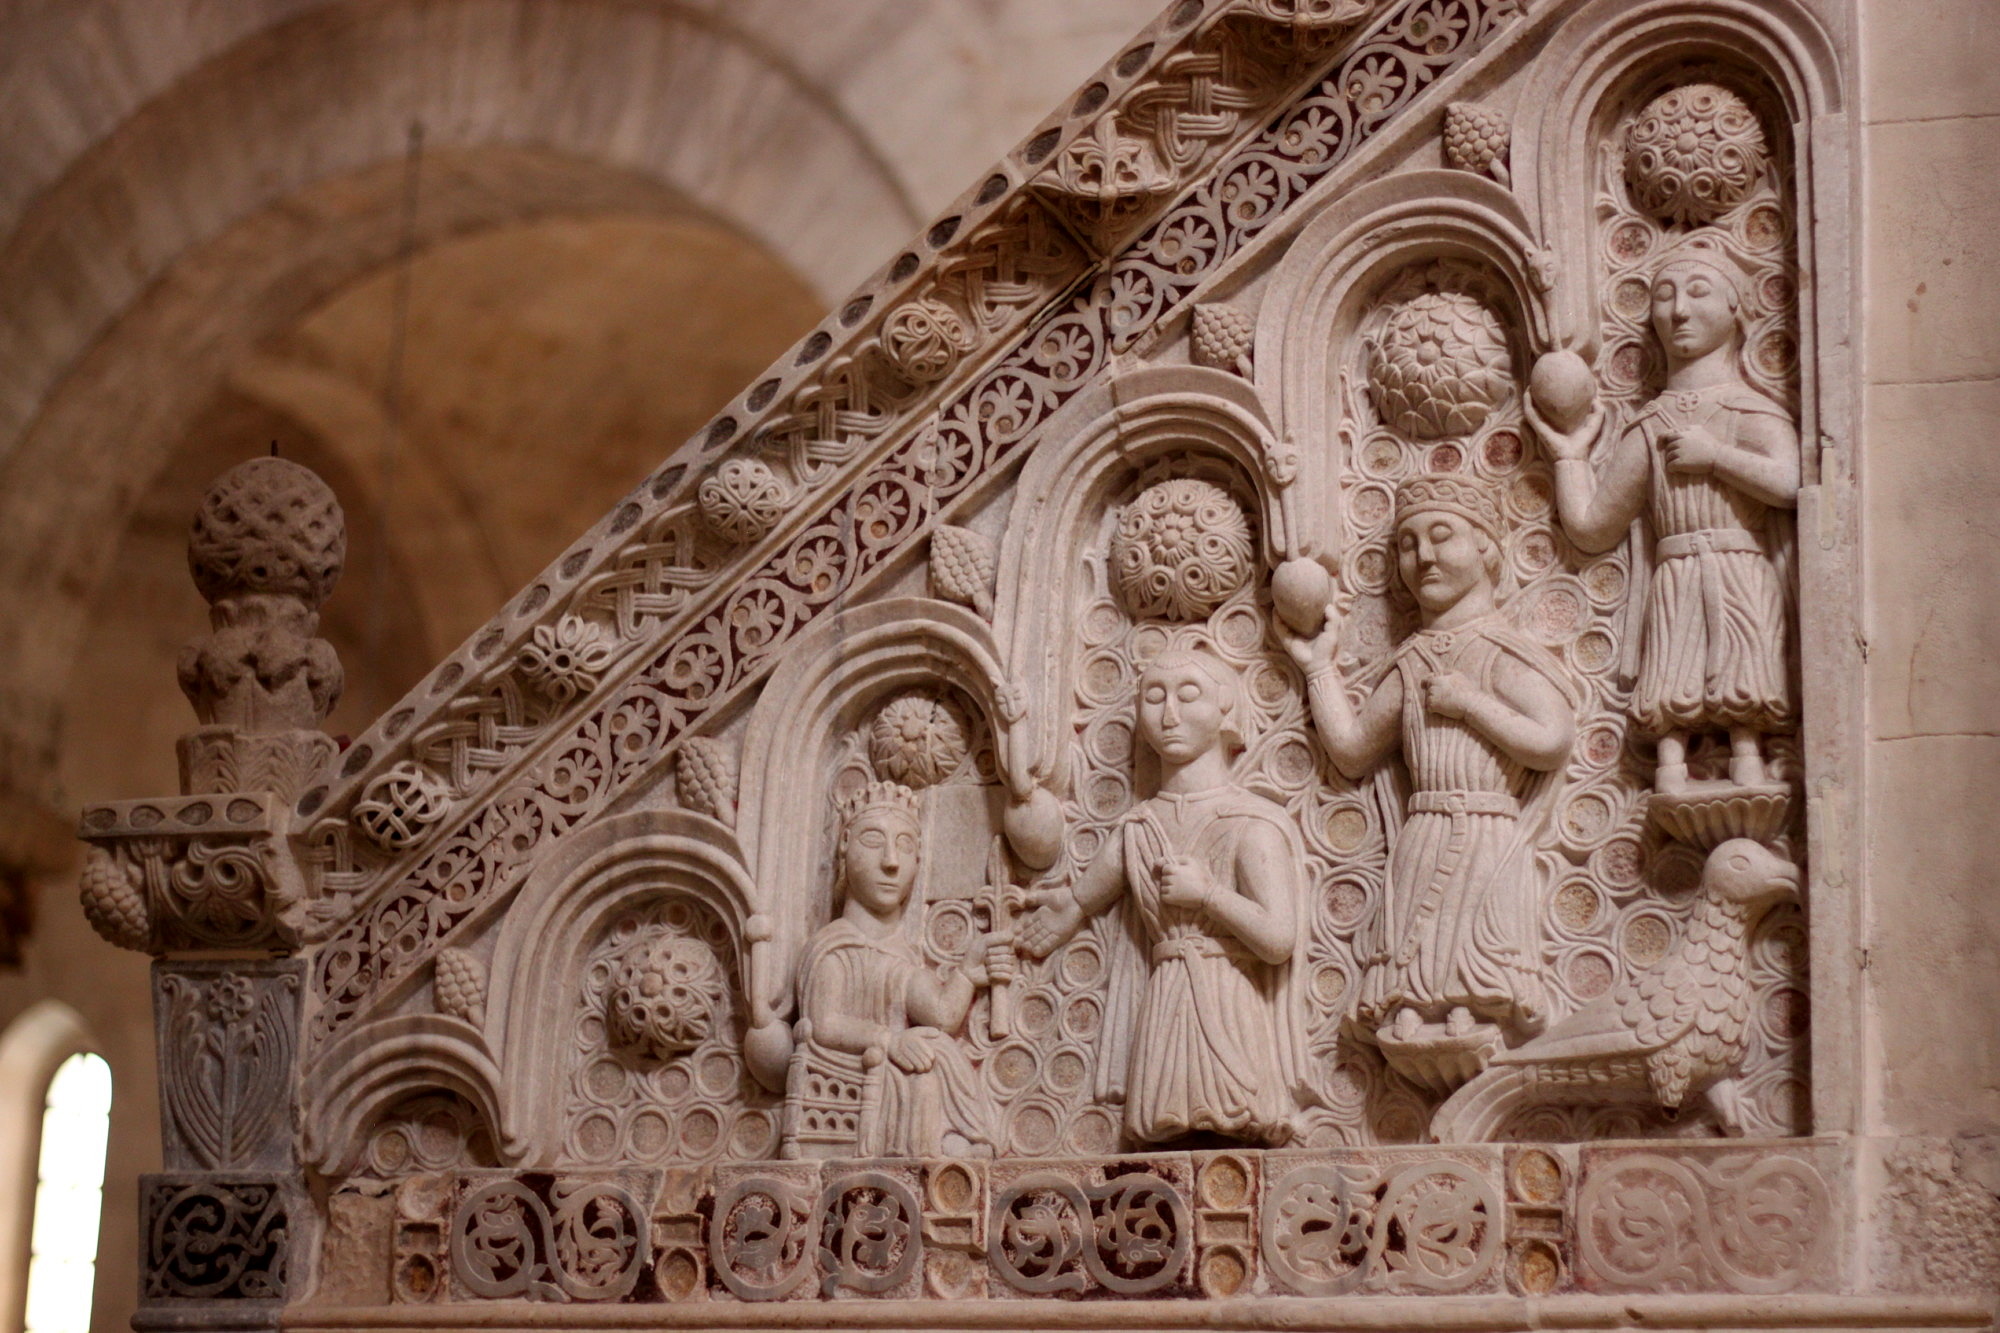 Kanzelrelief in der Kathedrale von Barletta. Dargestellt ist möglicherweise die staufische Herrschaftssukzession. Foto: Judith Werner